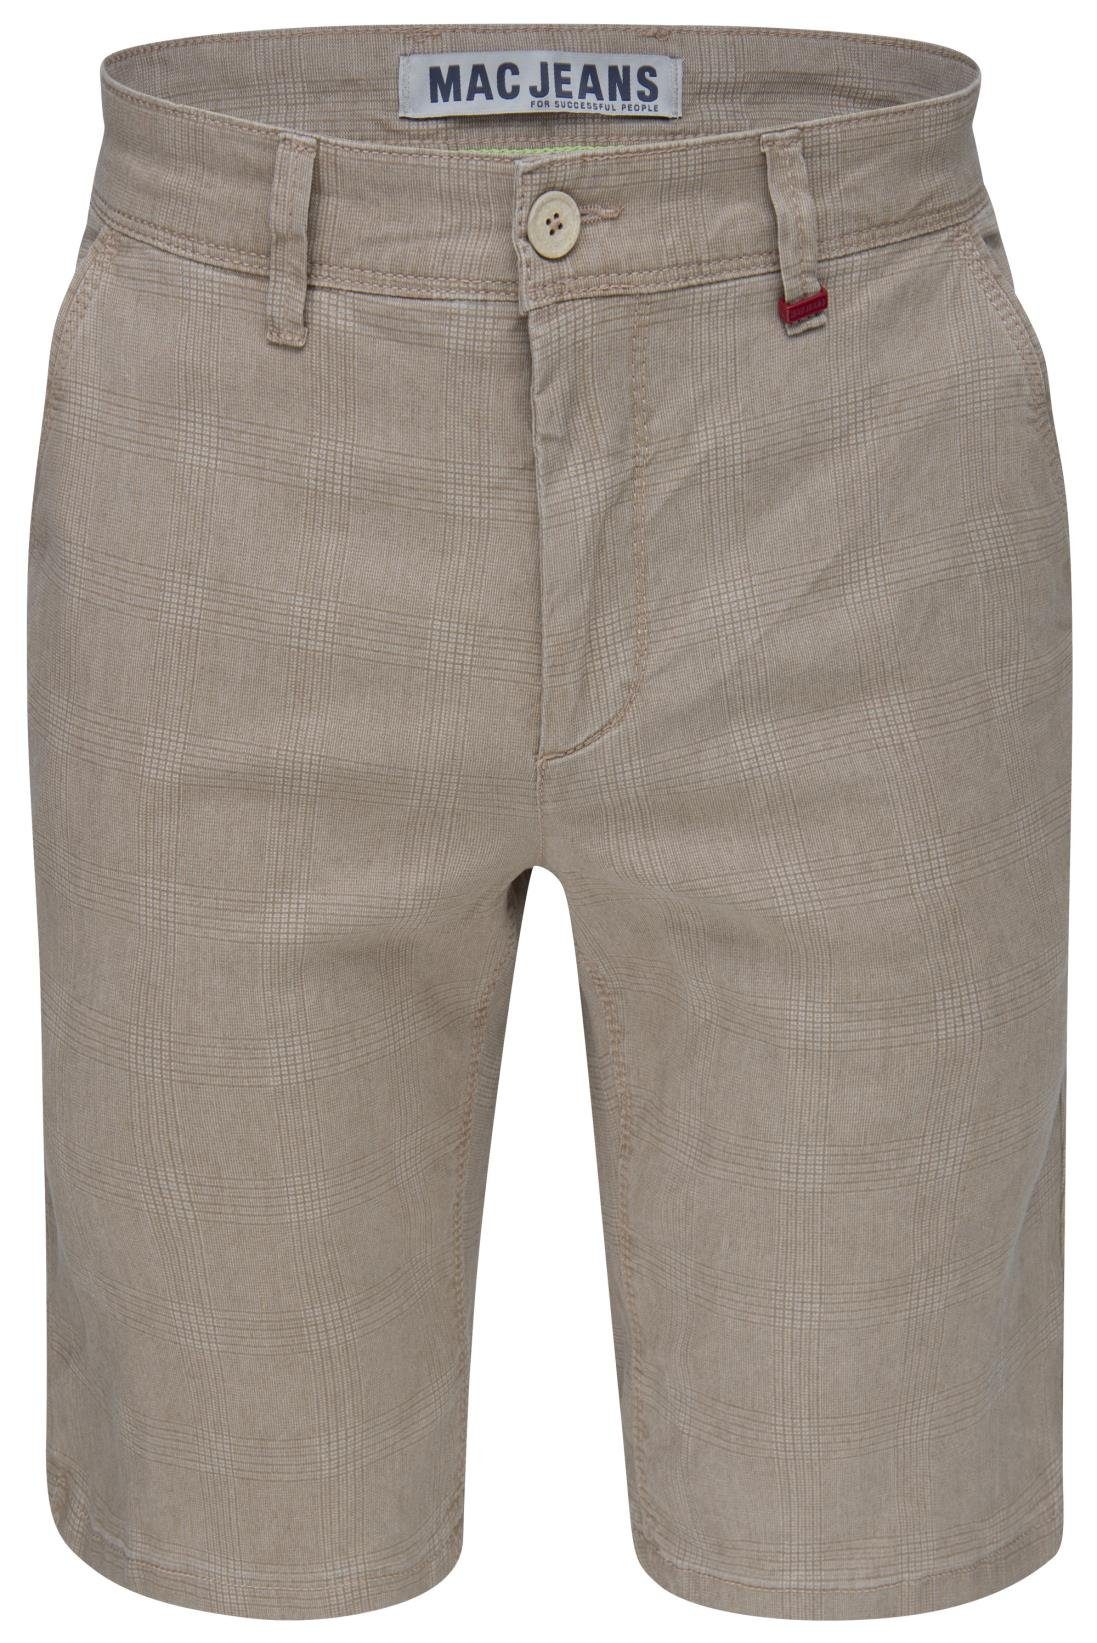 BERMUDA MAC 6392-00-0654L-203K 5-Pocket-Jeans pattern MAC LENNY beige